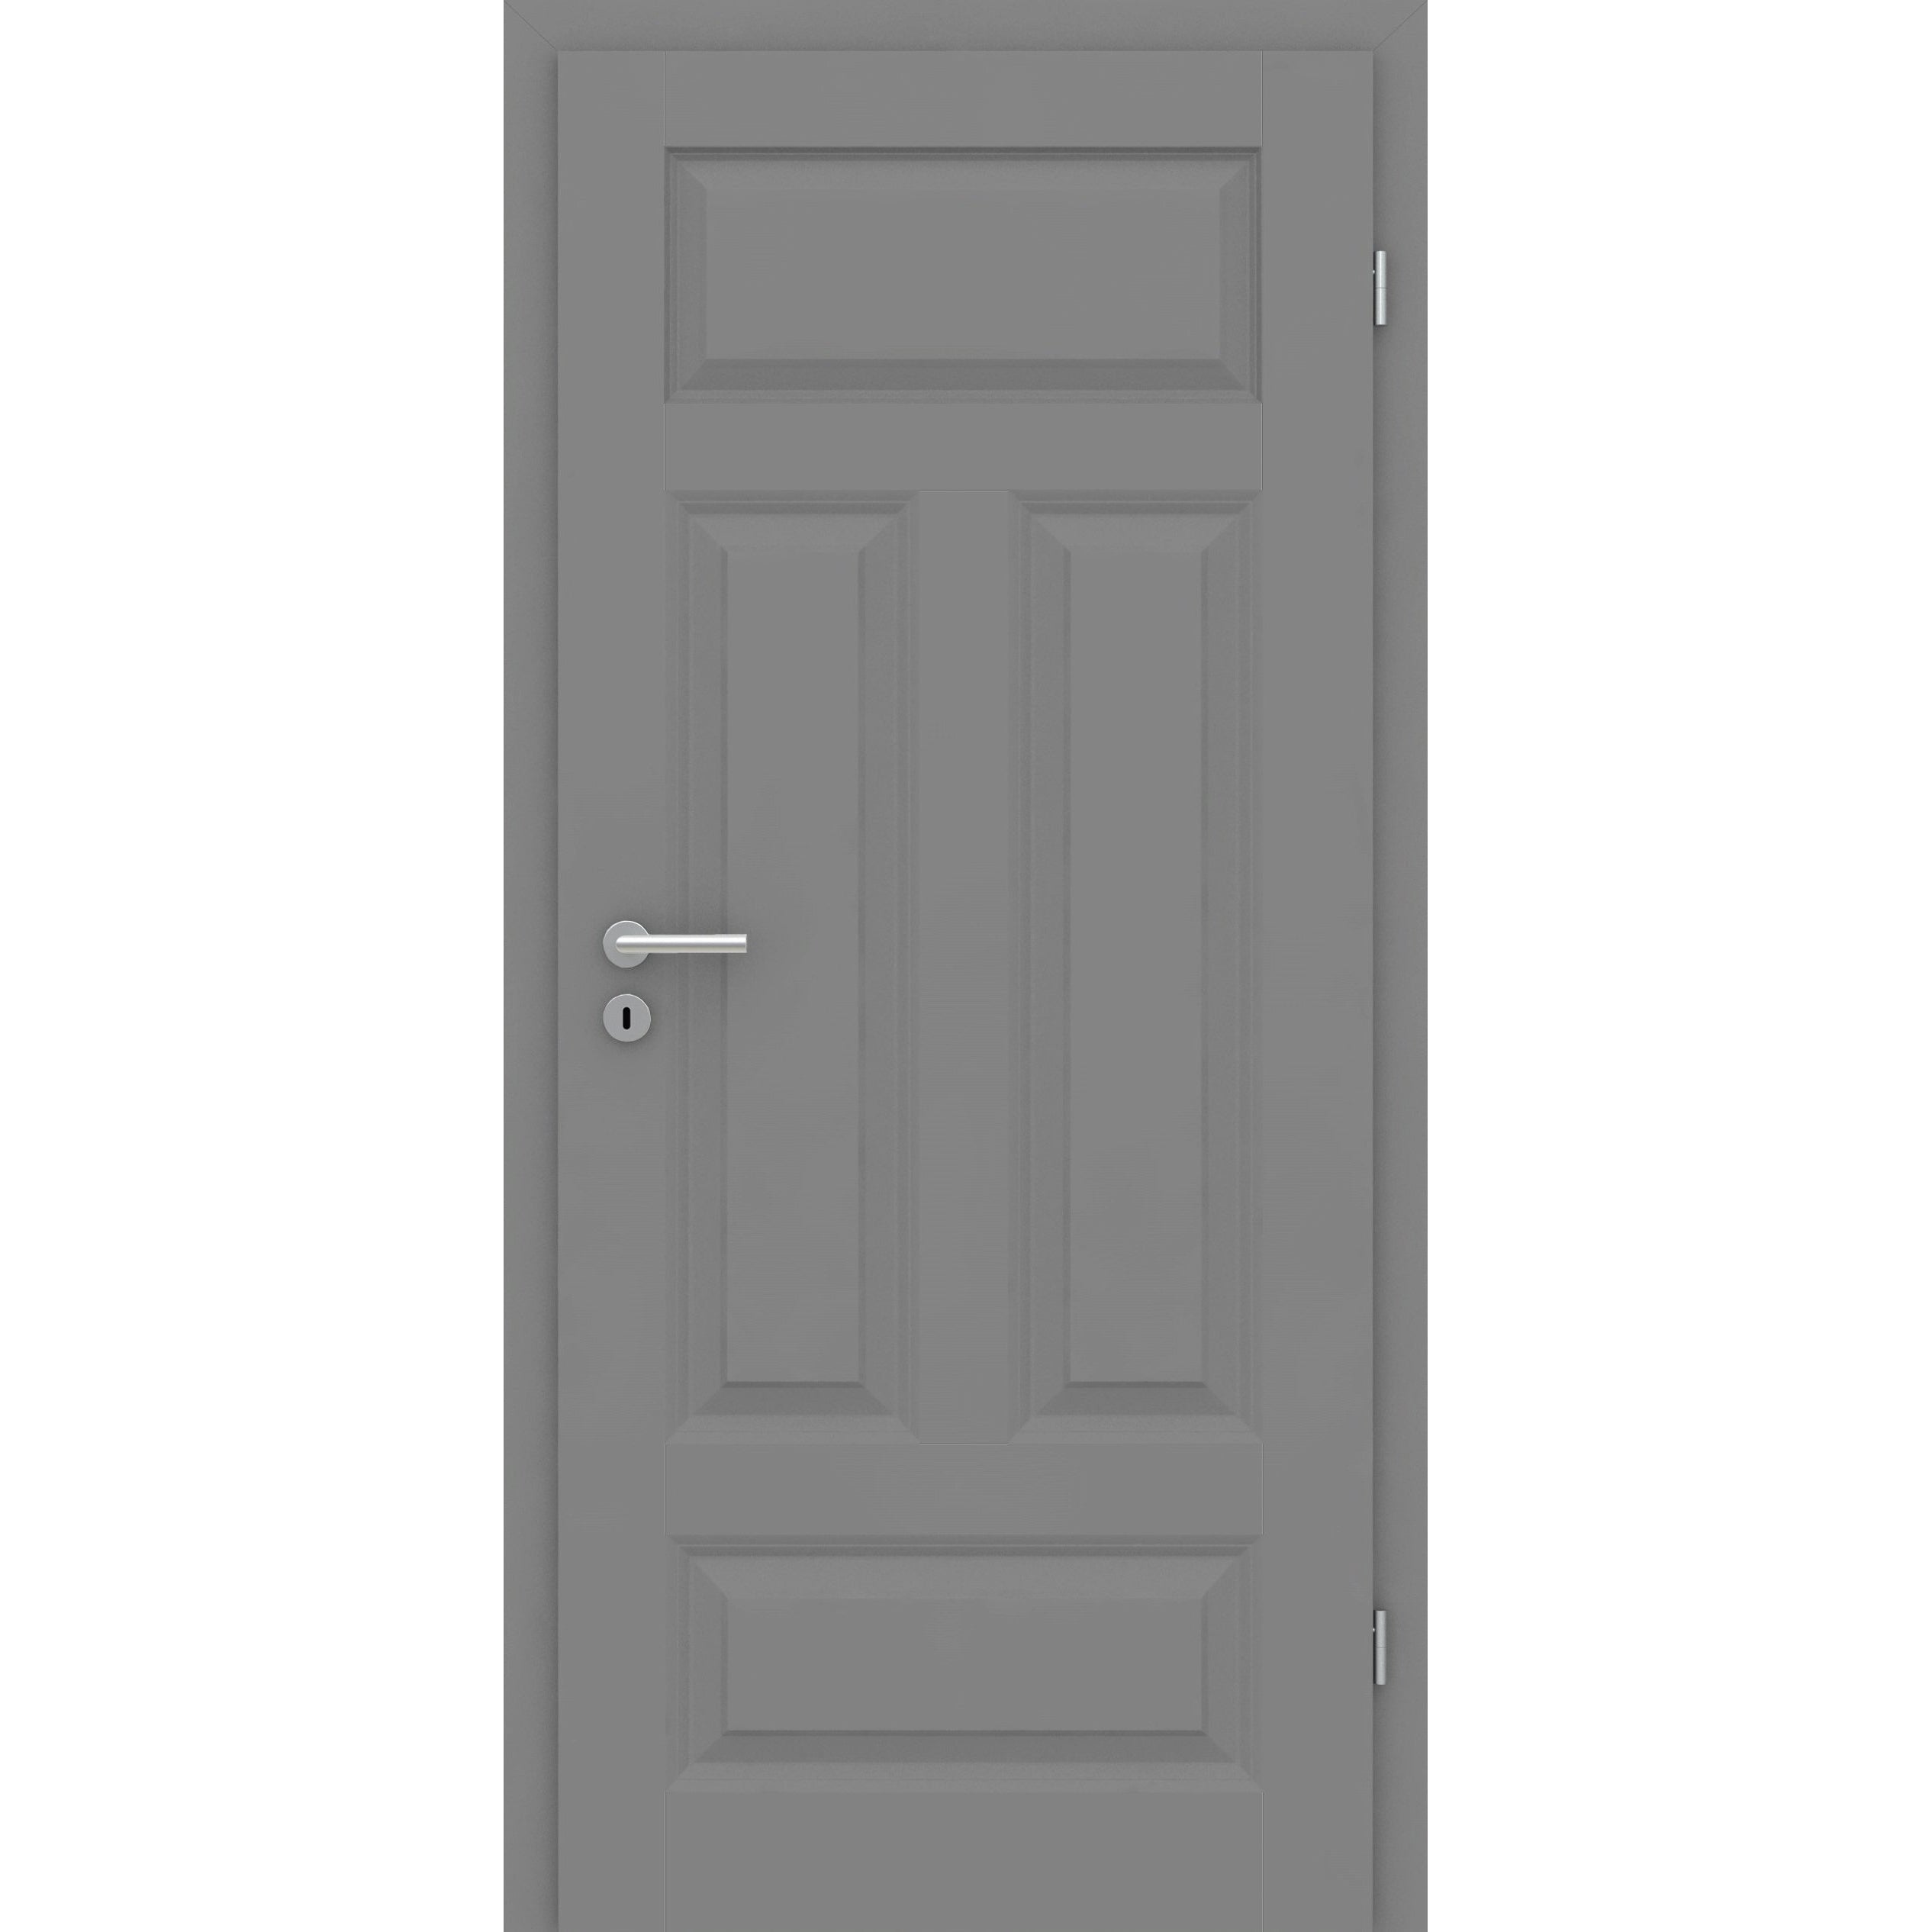 Wohnungseingangstür mit Zarge grau 4 Kassetten Quer Designkante SK2 / KK3 - Modell Stiltür KQ47